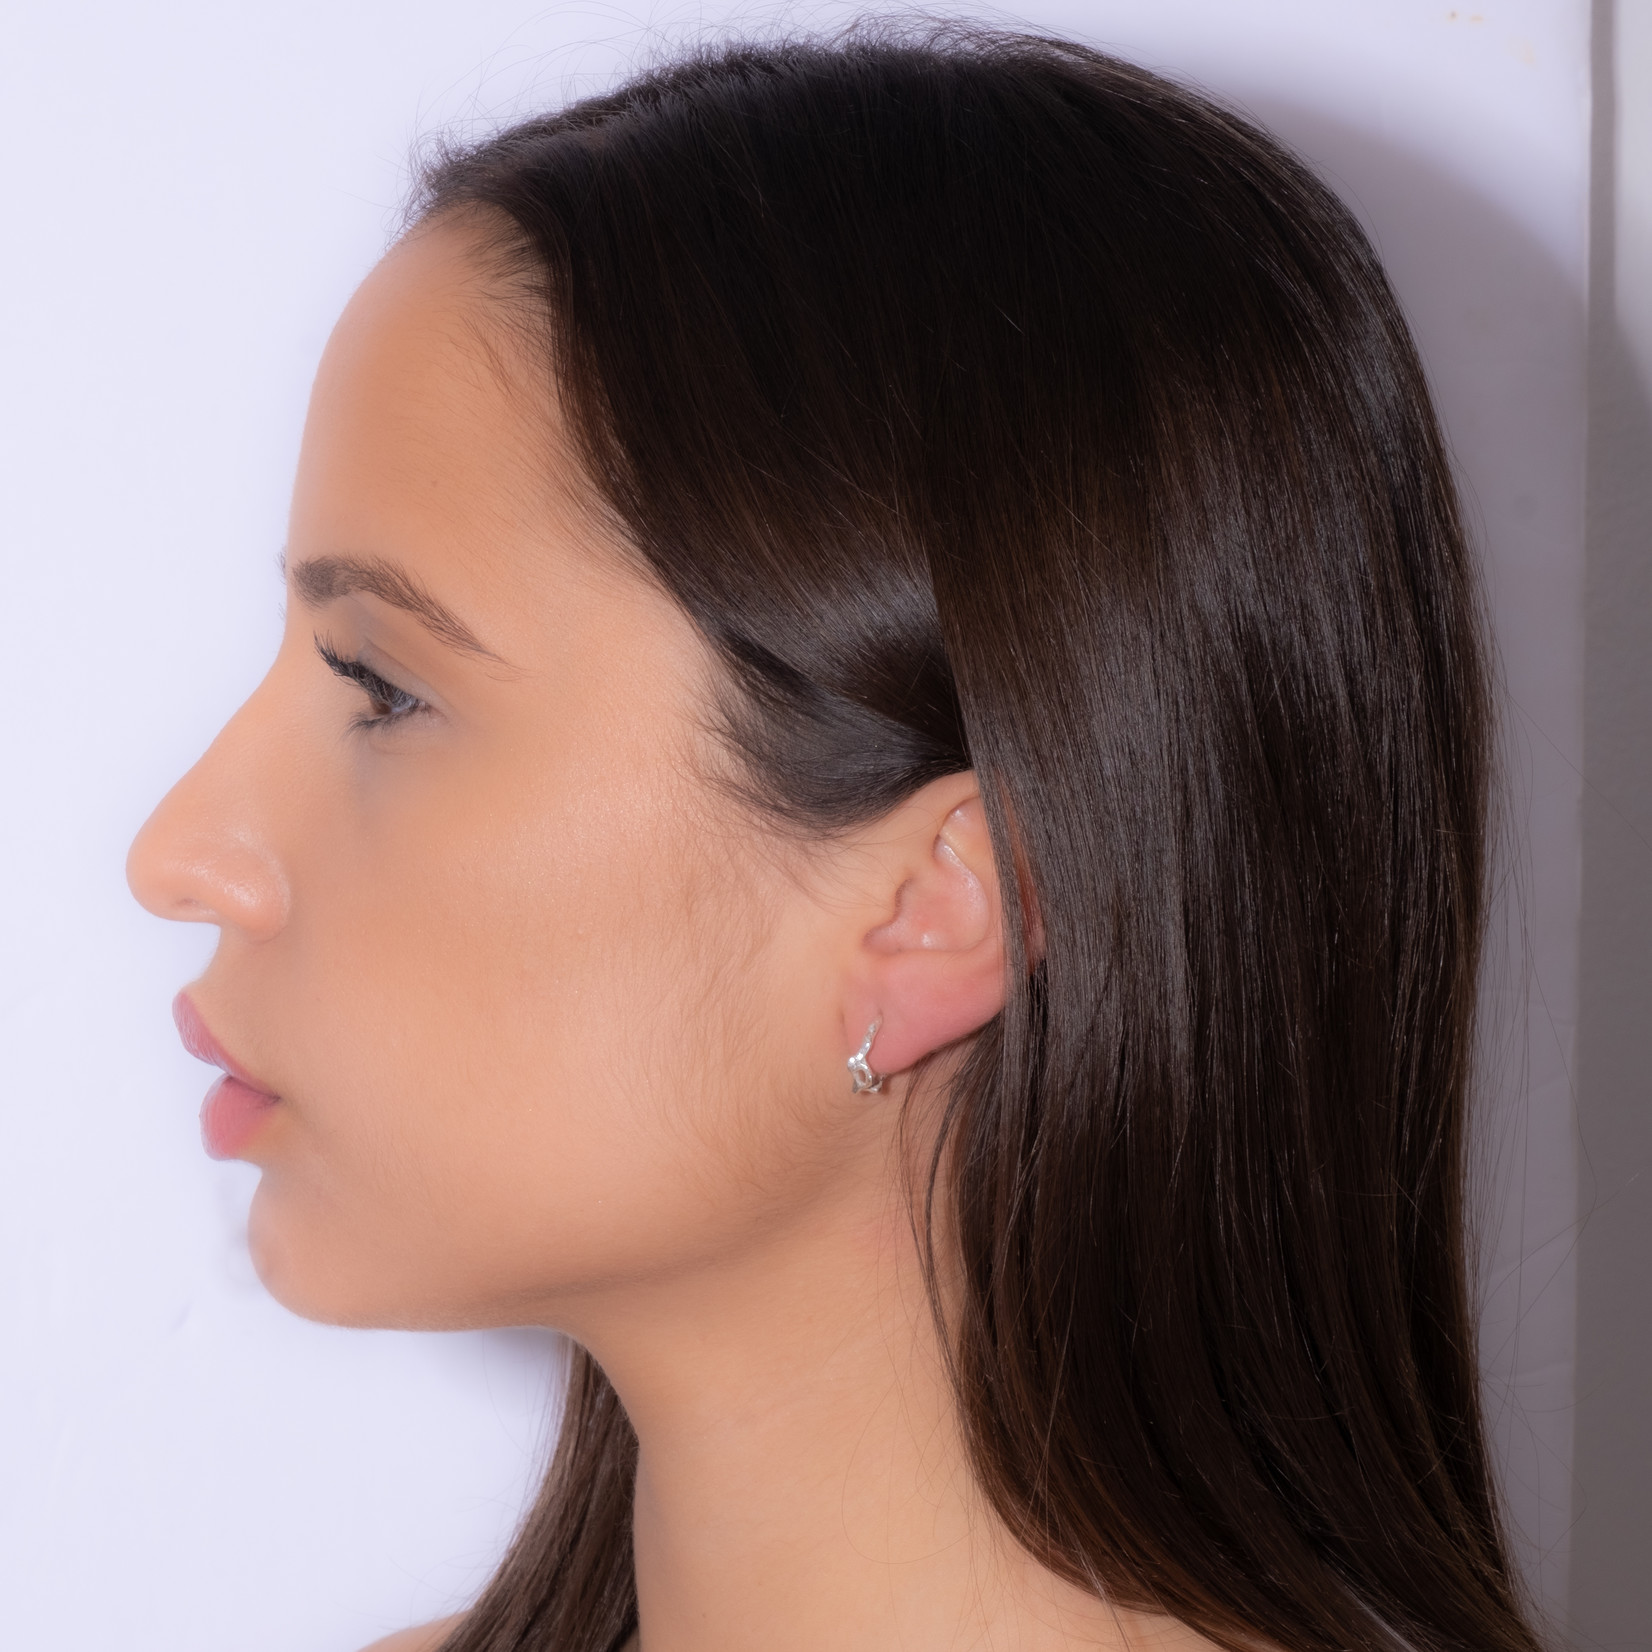 TEGO Women's earrings small organic silver hoop earrings